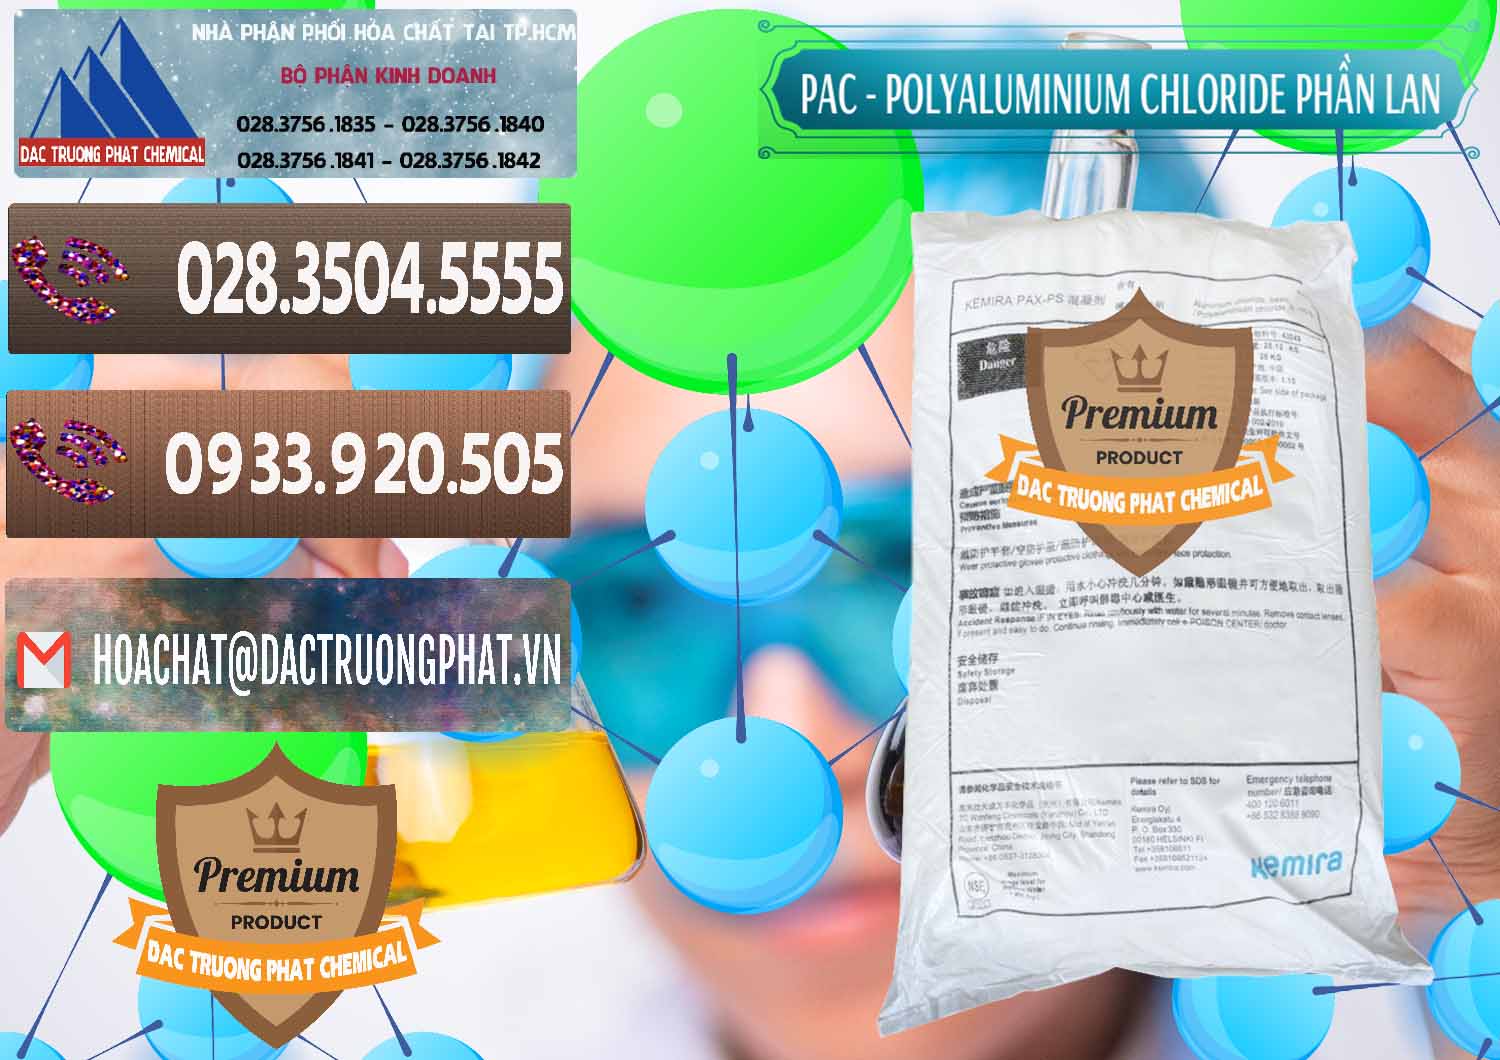 Công ty cung ứng & bán PAC - Polyaluminium Chloride Phần Lan Finland - 0383 - Cty chuyên kinh doanh & phân phối hóa chất tại TP.HCM - hoachatviet.net